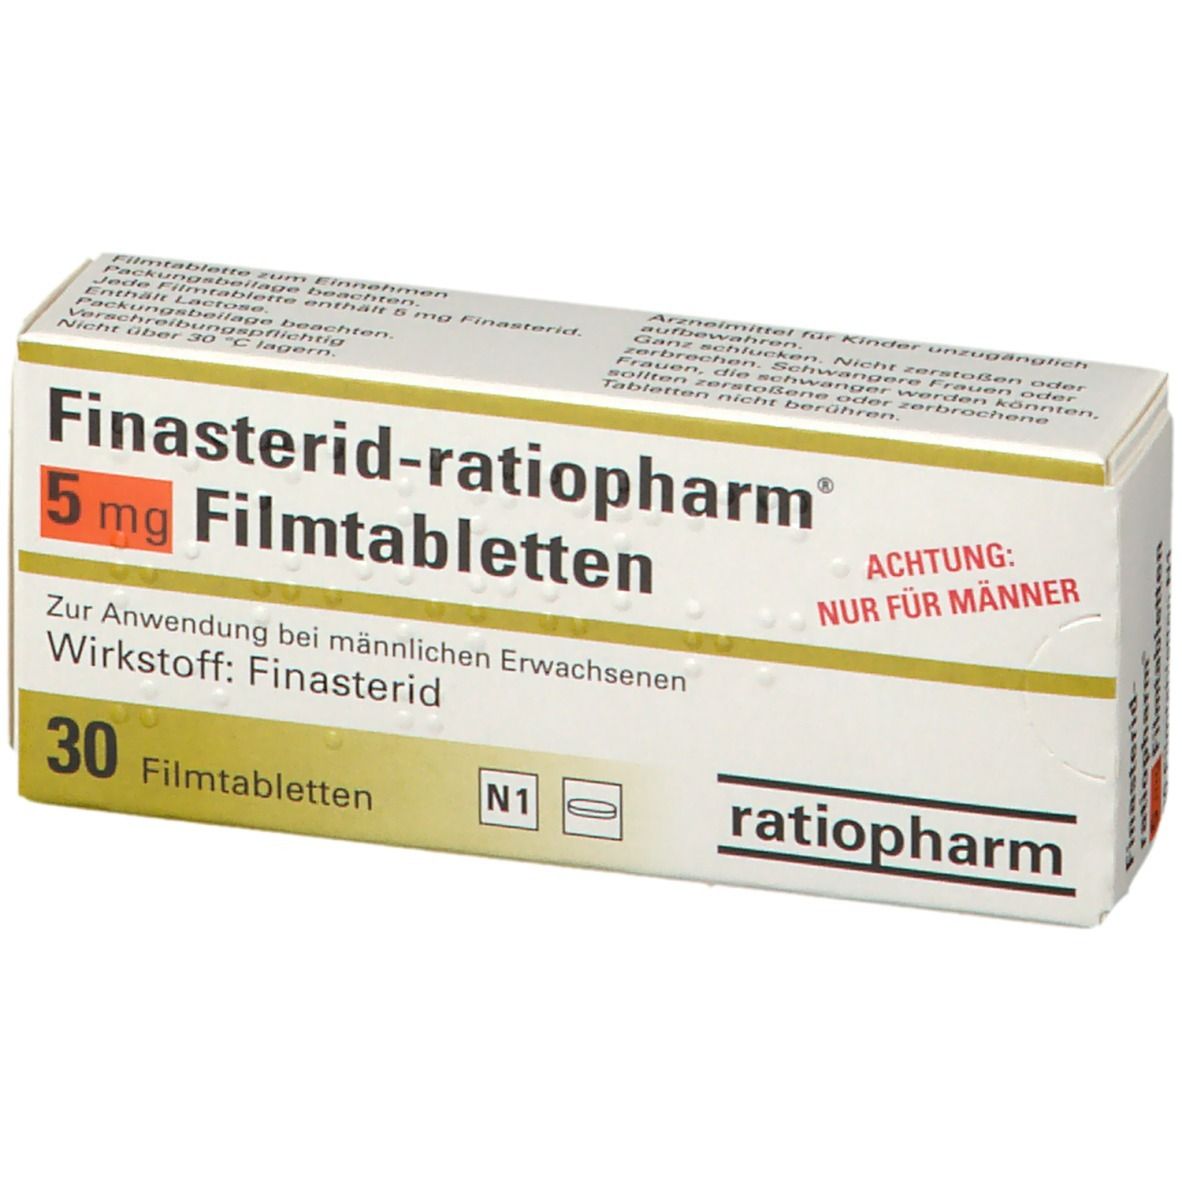 Finasterid-ratiopharm® 5 mg